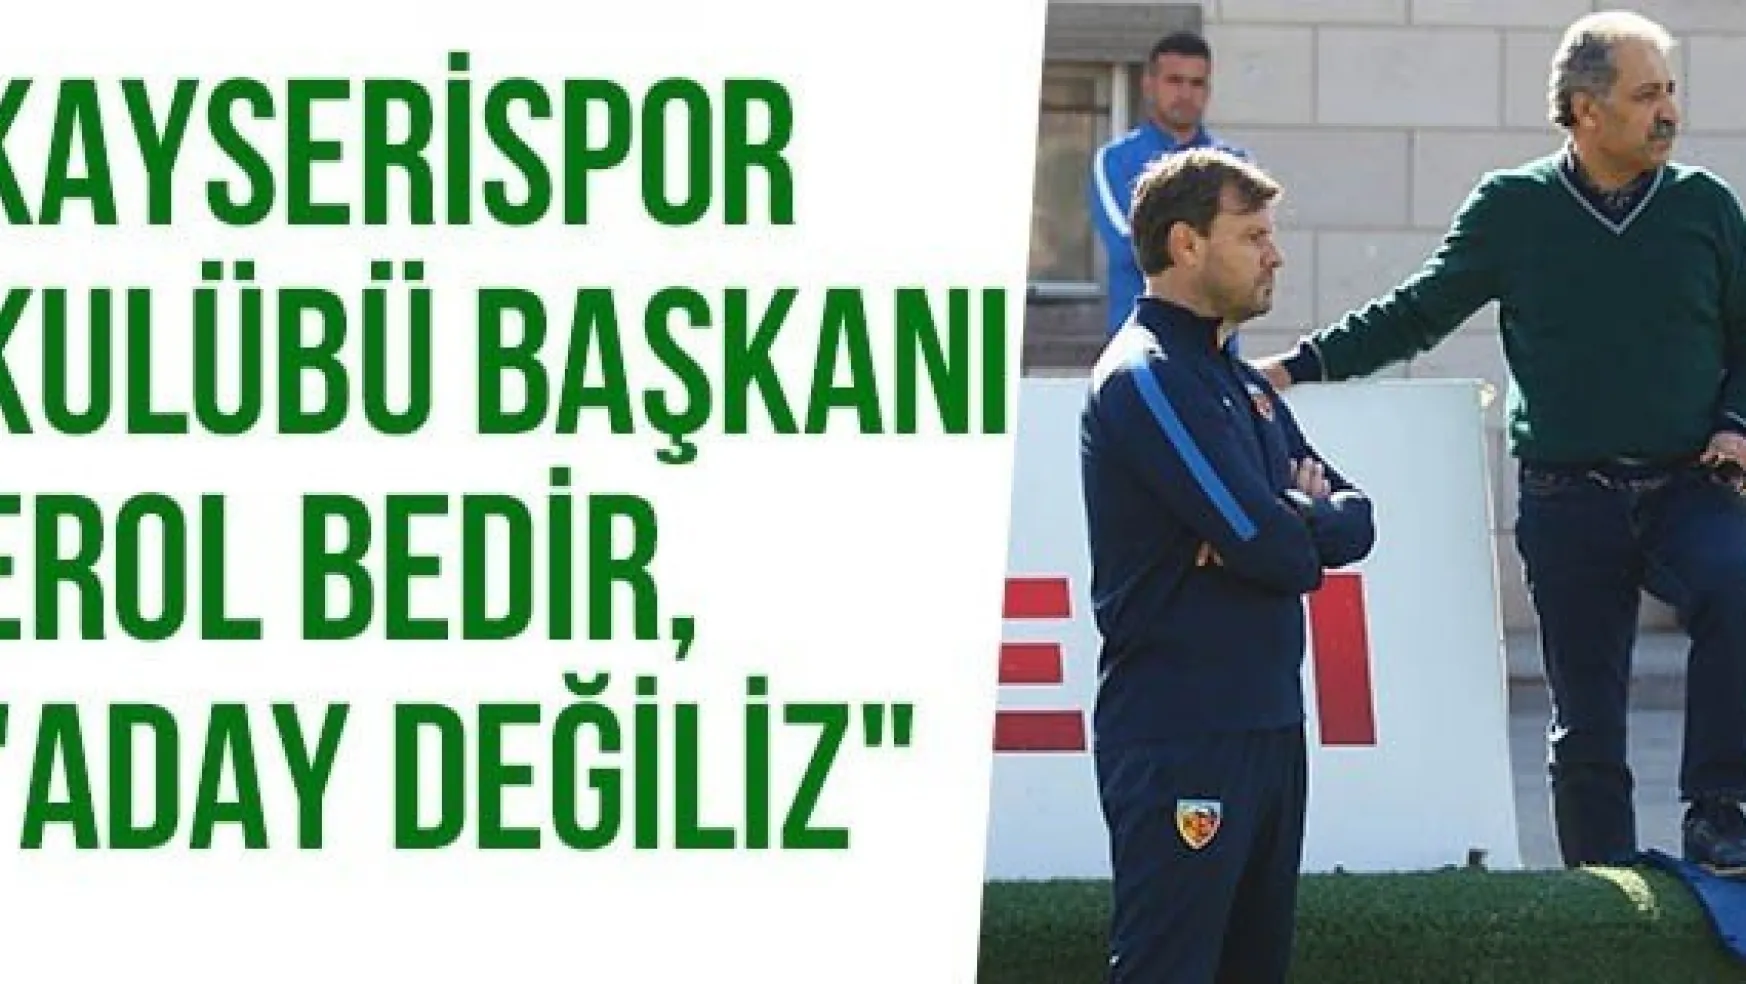 Kayserispor Kulübü Başkanı Erol Bedir, &quotAday Değiliz"